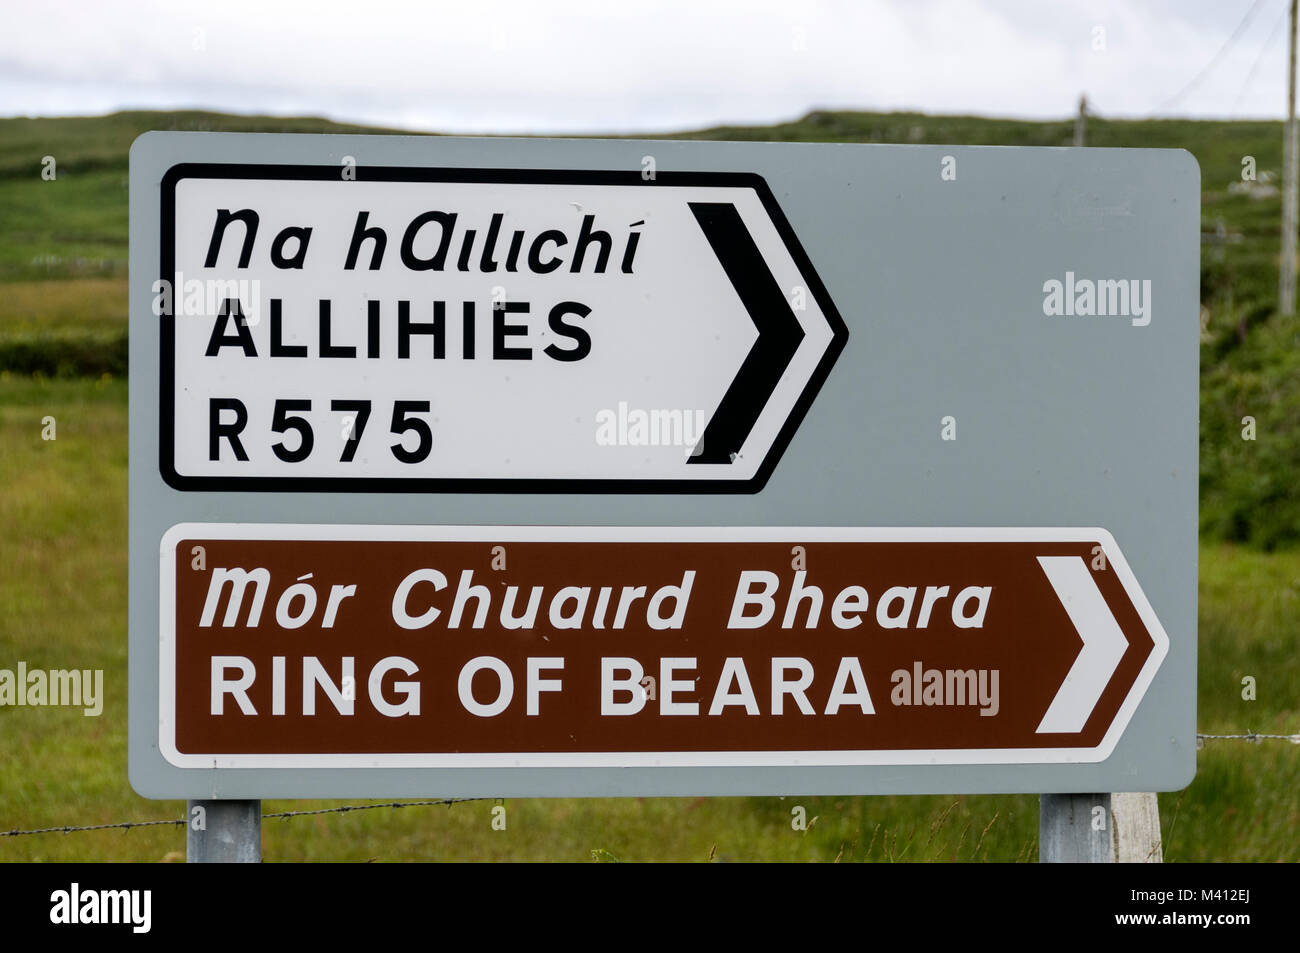 Panneau routier en anglais et irlandais, en pointant sur anneau de Beara et alliés dans la péninsule de Beara, l'Irlande du Sud Banque D'Images